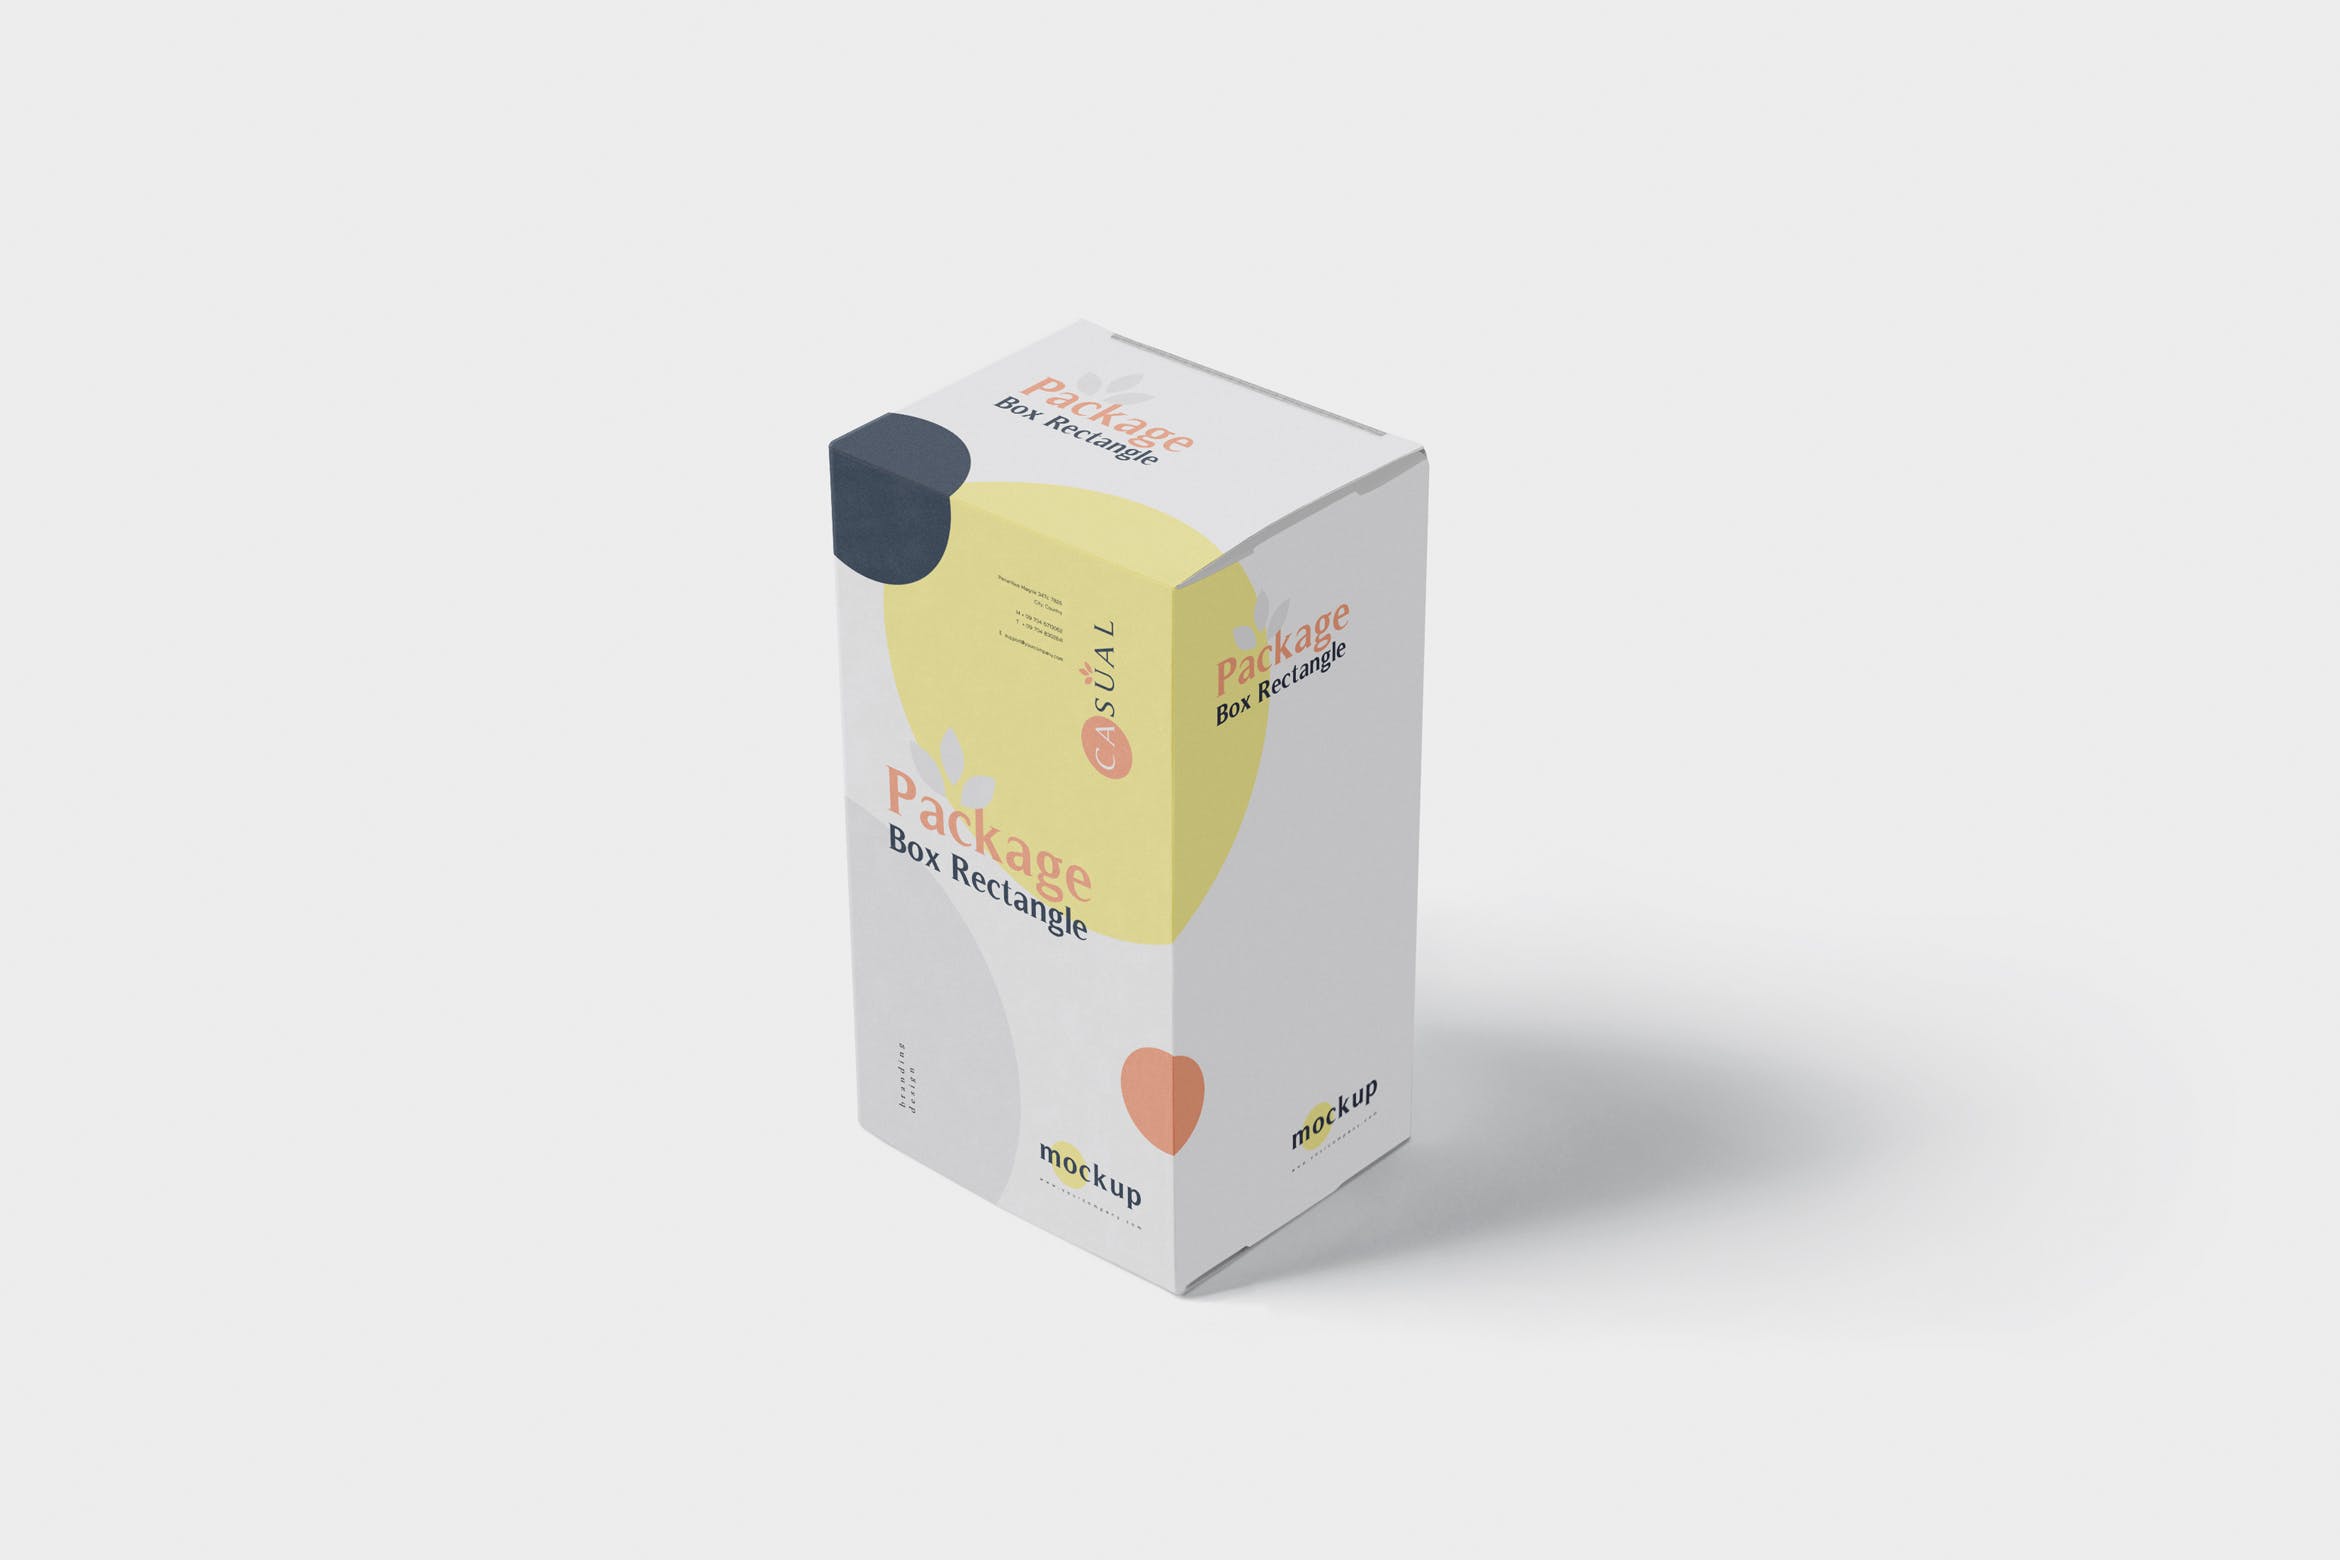 矩形产品包装盒外观设计效果图样机 Package Box Mock-Up – Rectangle插图